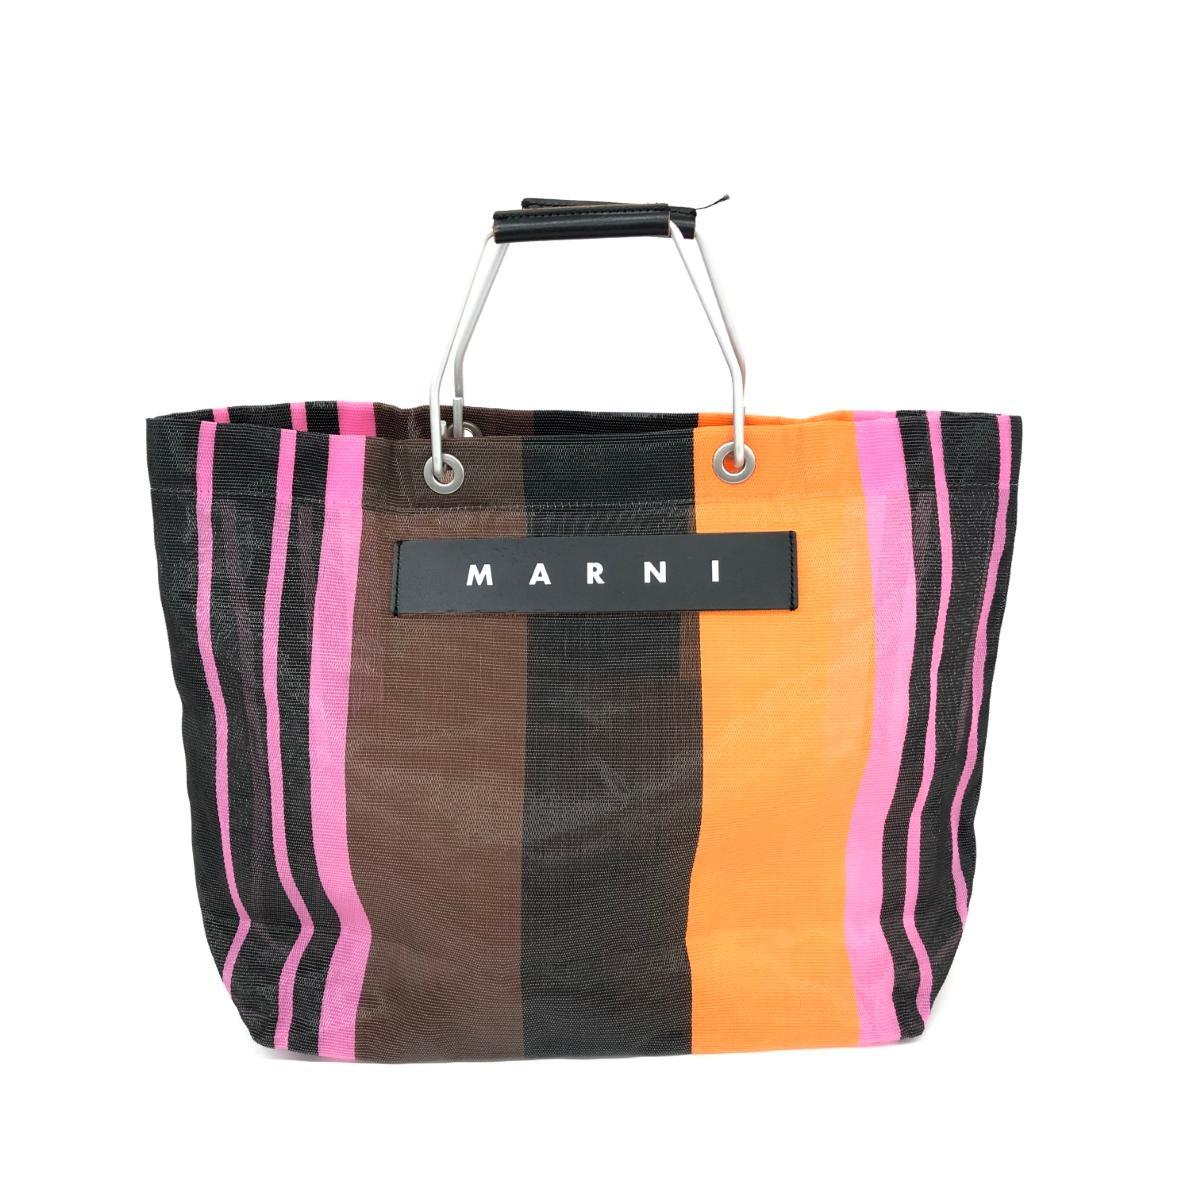 ◆MARNI マルニ ハンドバッグ◆ マルチカラー フラワーカフェ マルチストライプ レディース bag 鞄